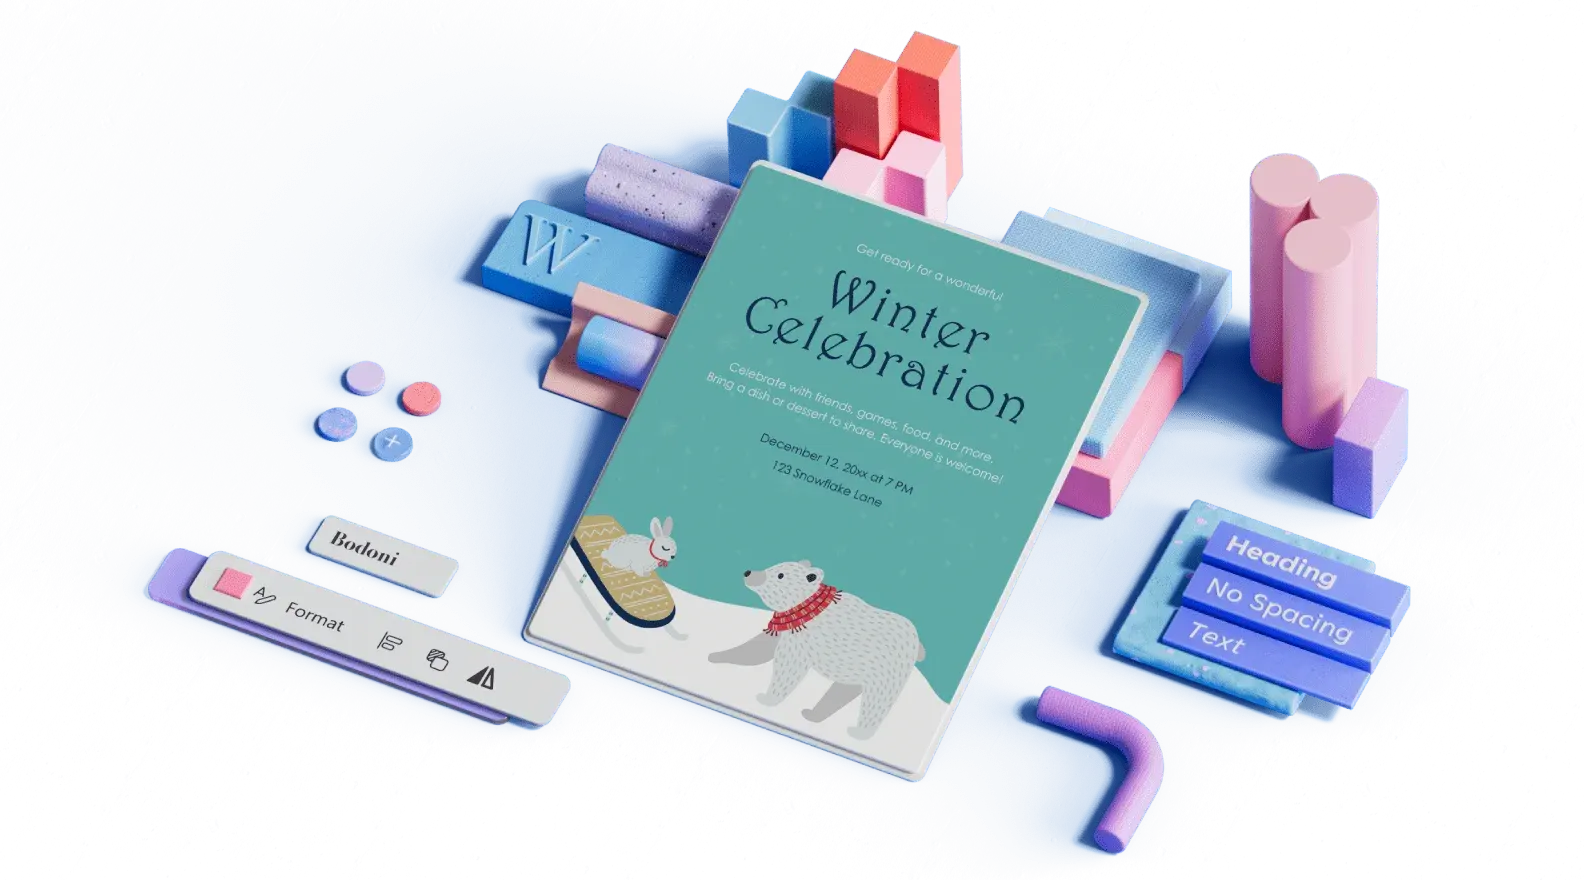 Modelo de anúncio de comemoração de inverno entre elementos de design ilustrados 3D